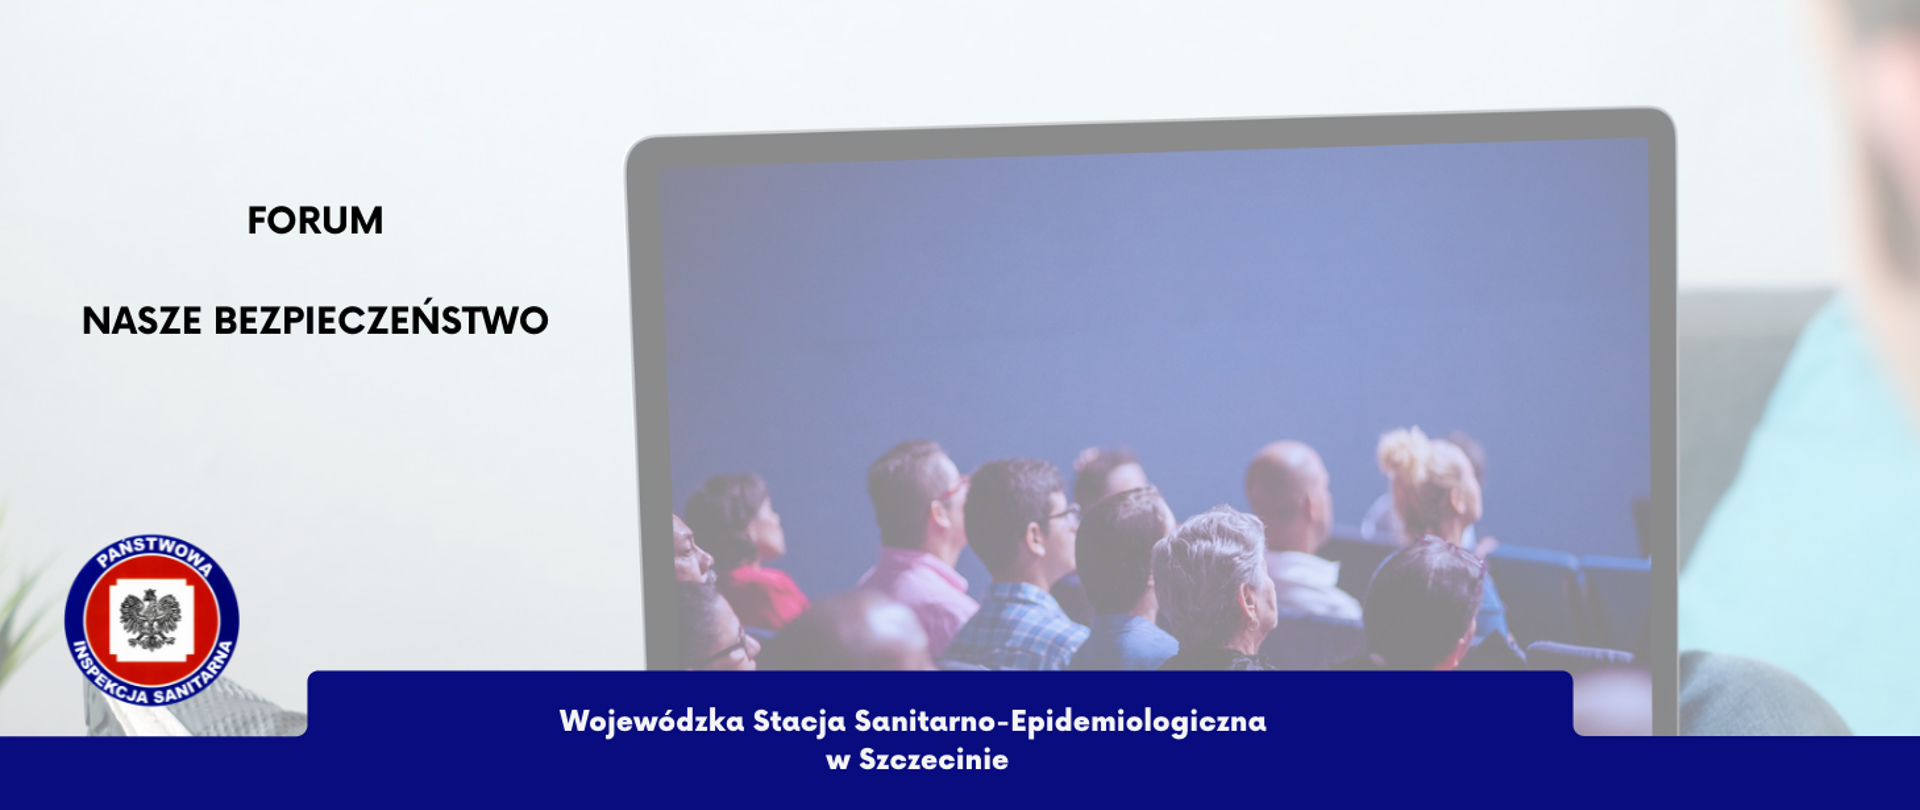 Zdjęcie przedstawia grupę osób słuchającą wykładu. Po lewej stronie zdjęcia znajduje się logo Państwowej Inspekcji Sanitarnej oraz napis "Forum Nasze Bezpieczeństwo". Na dole zdjęcia znajduje się napis Wojewódzka Stacja Sanitarno-Epidemiologiczna w Szczecinie.